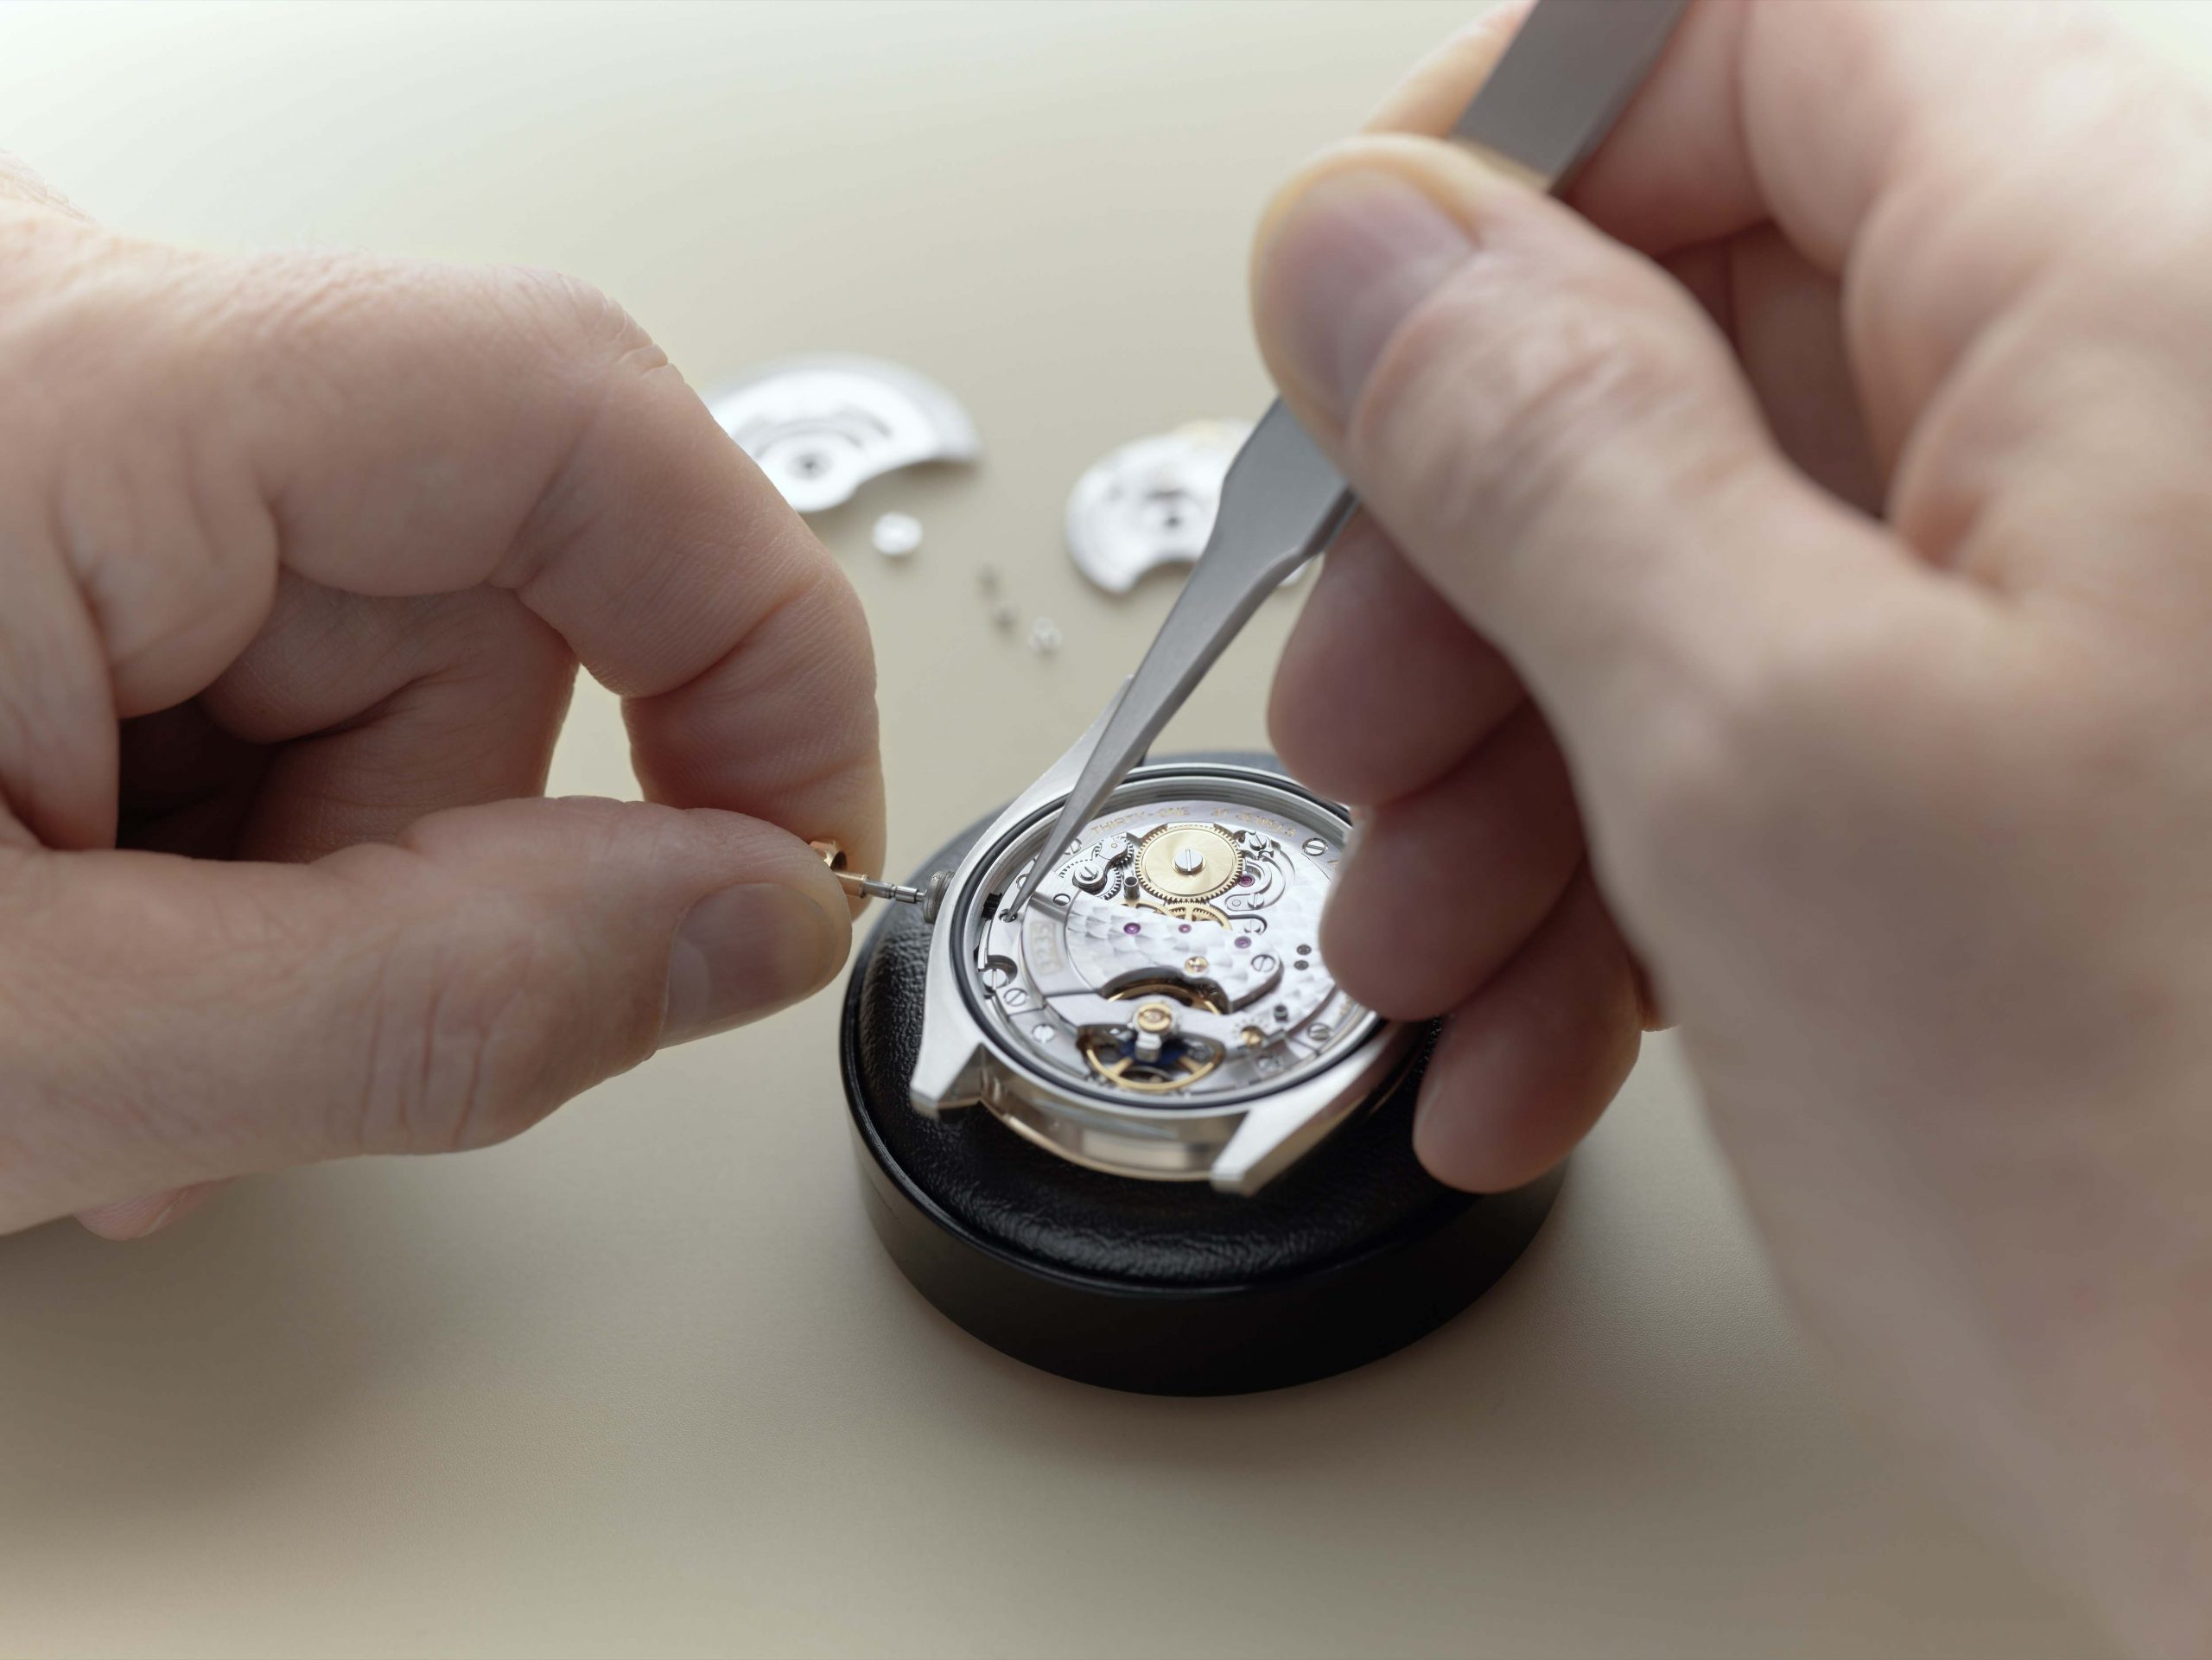 Dịch vụ Thế giới Rolex - Người thợ đồng hồ vặn một cách tỉ mỉ dây chính để loại bỏ lớp lõi khỏi đồng hồ.